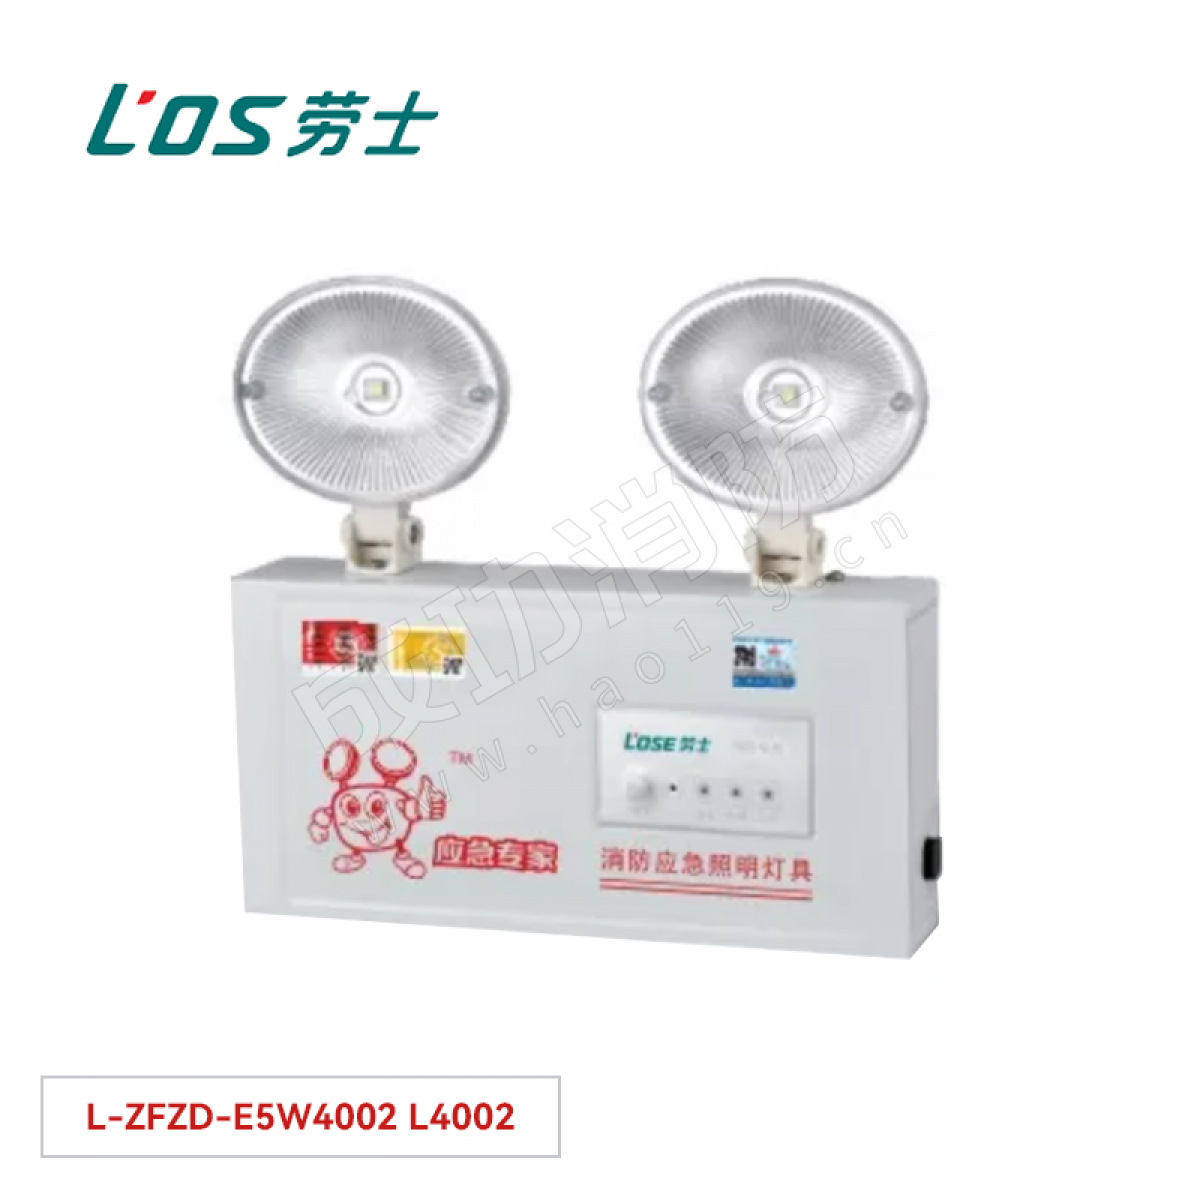 劳士 消防应急照明灯(壁挂安装) L-ZFZD-E5W4002 L4002